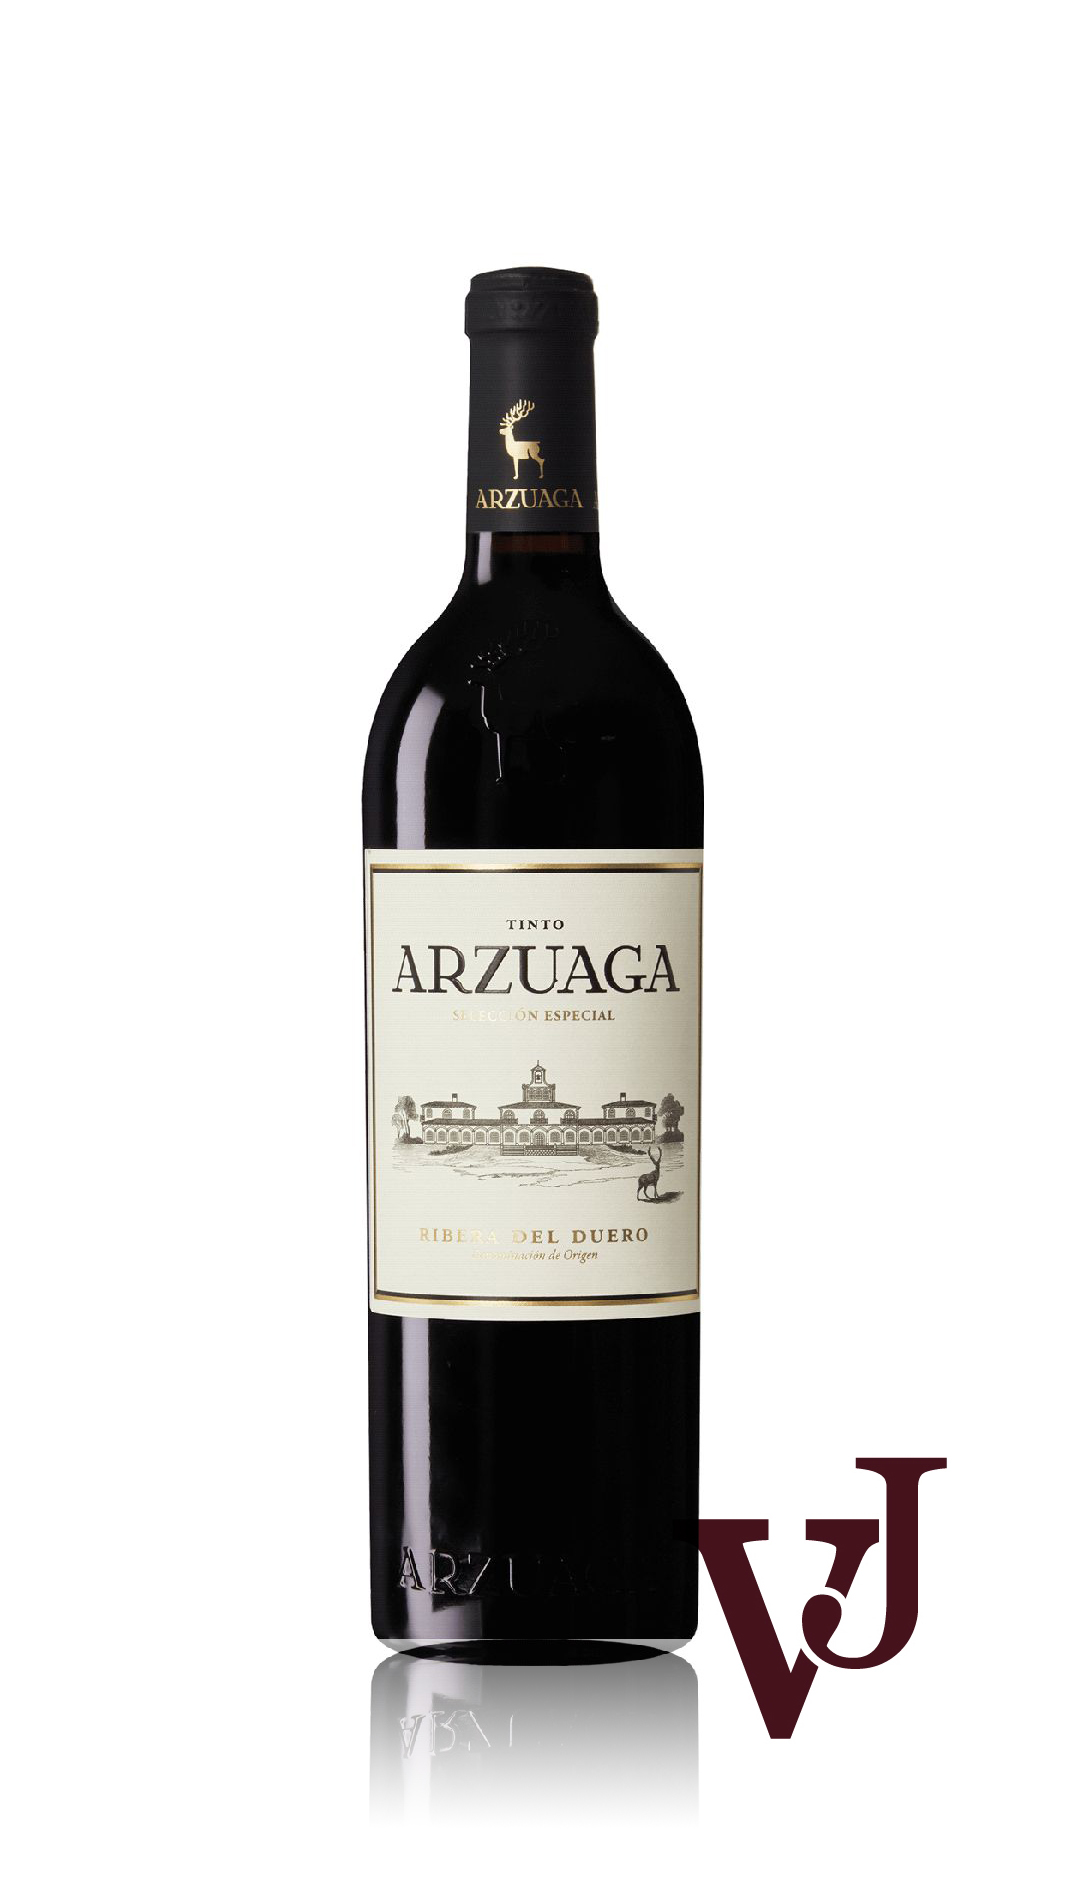 Rött Vin - Arzuaga artikel nummer 107901 från producenten Bodegas Arzuaga Navarro från området Spanien